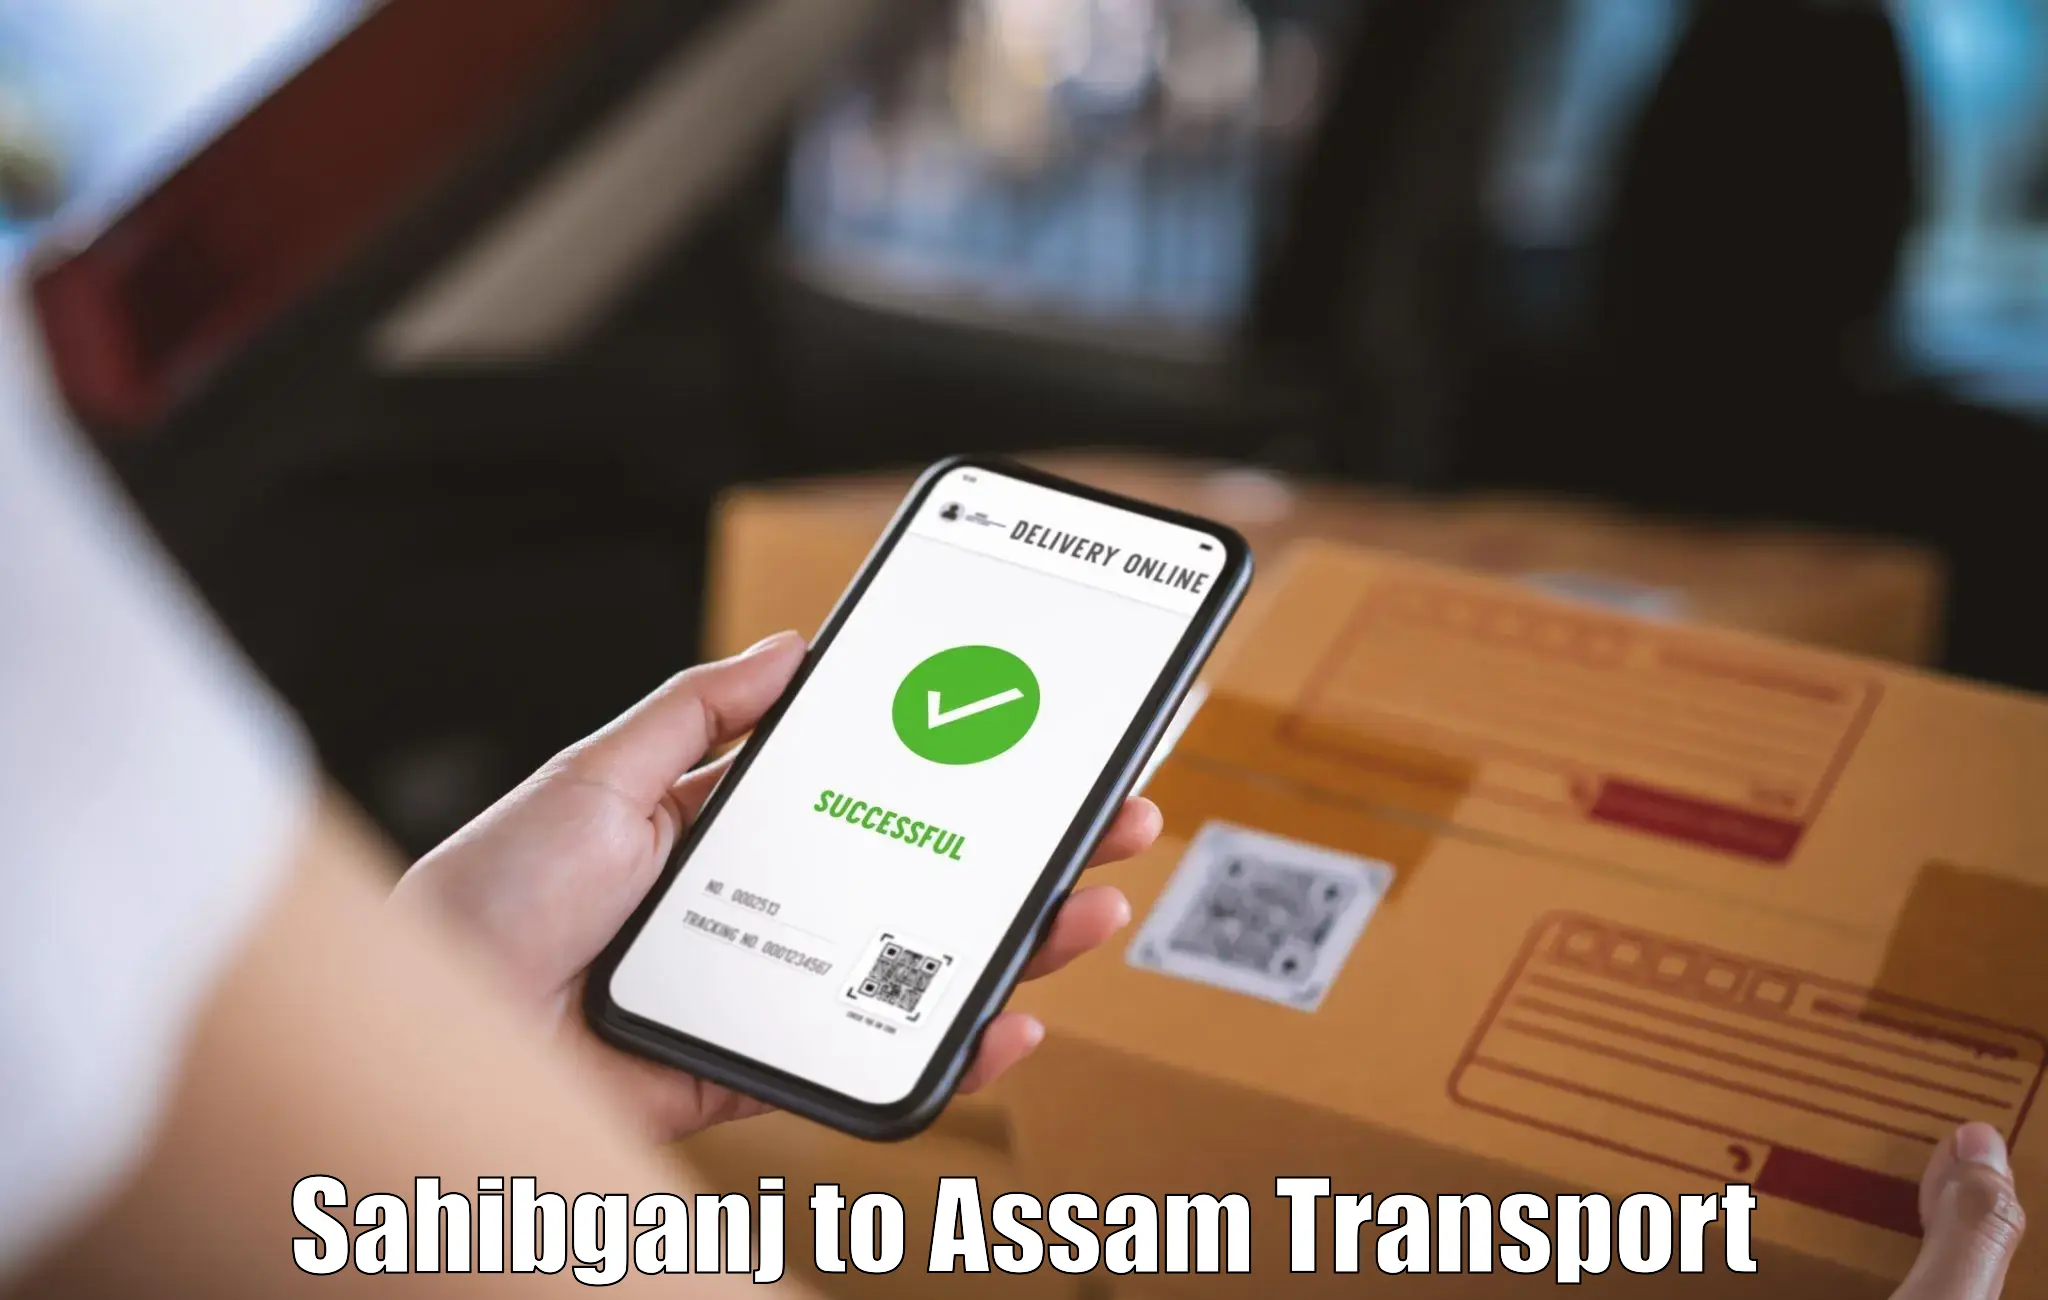 Transport shared services Sahibganj to Chaparmukh